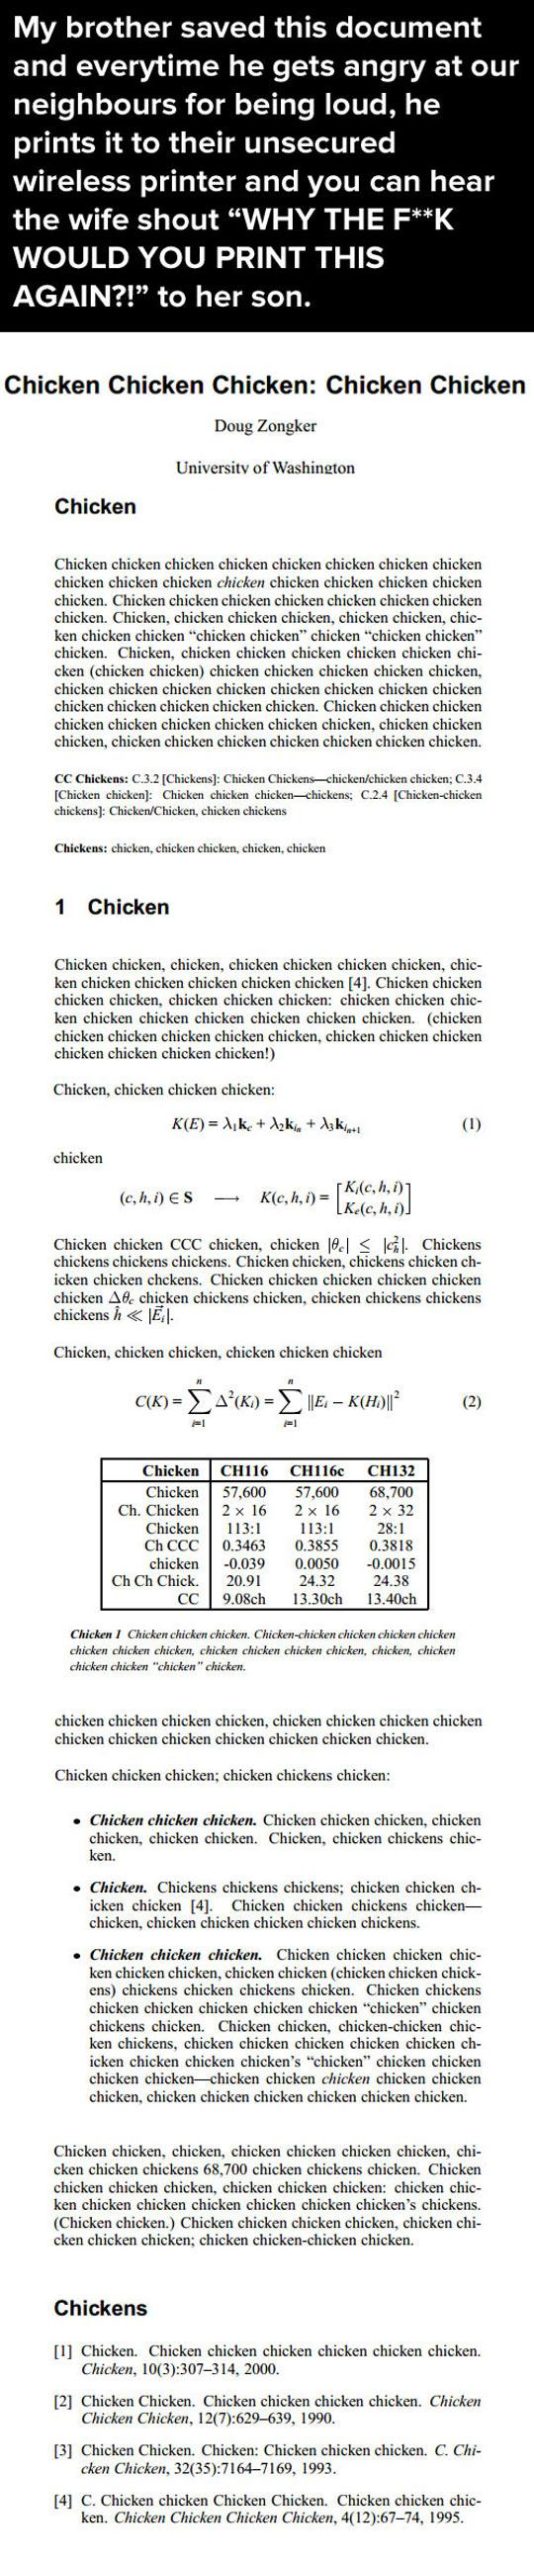 Chicken+chickens+chicken+chicken